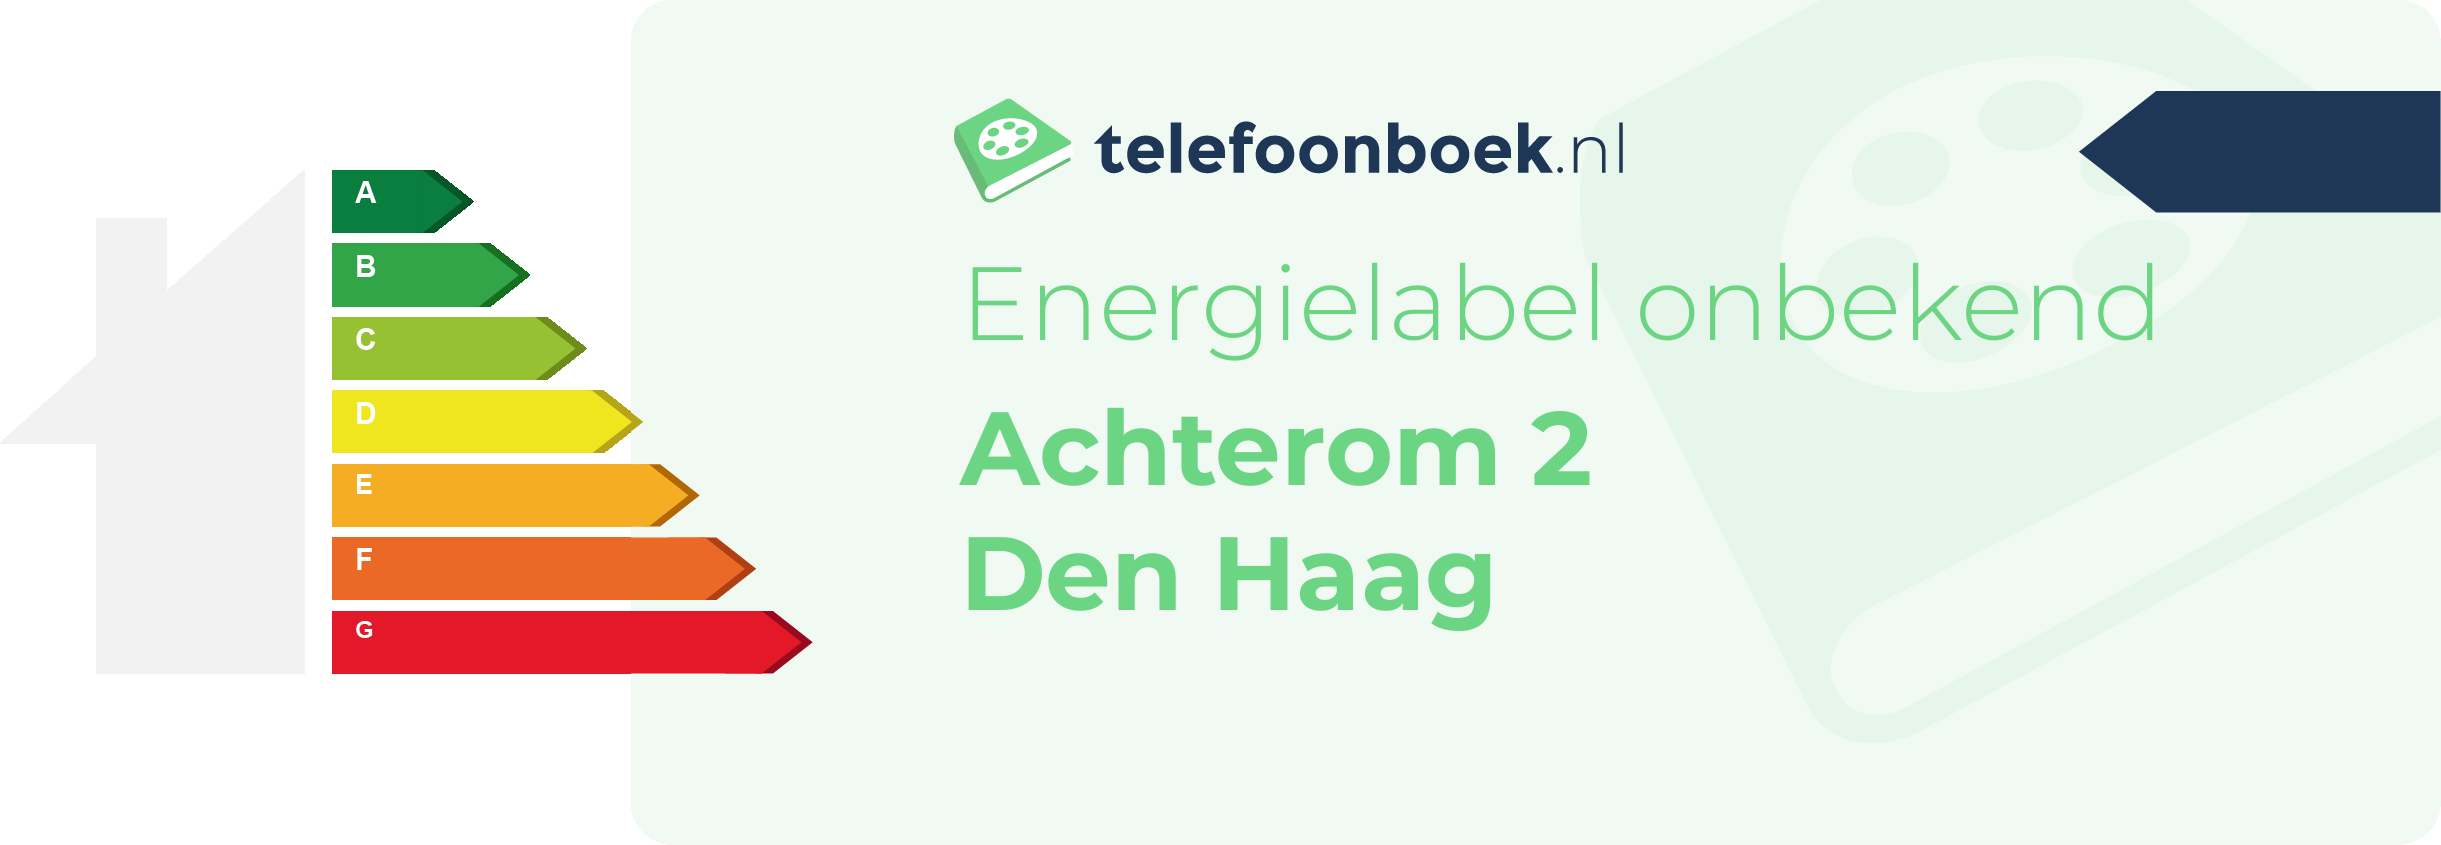 Energielabel Achterom 2 Den Haag